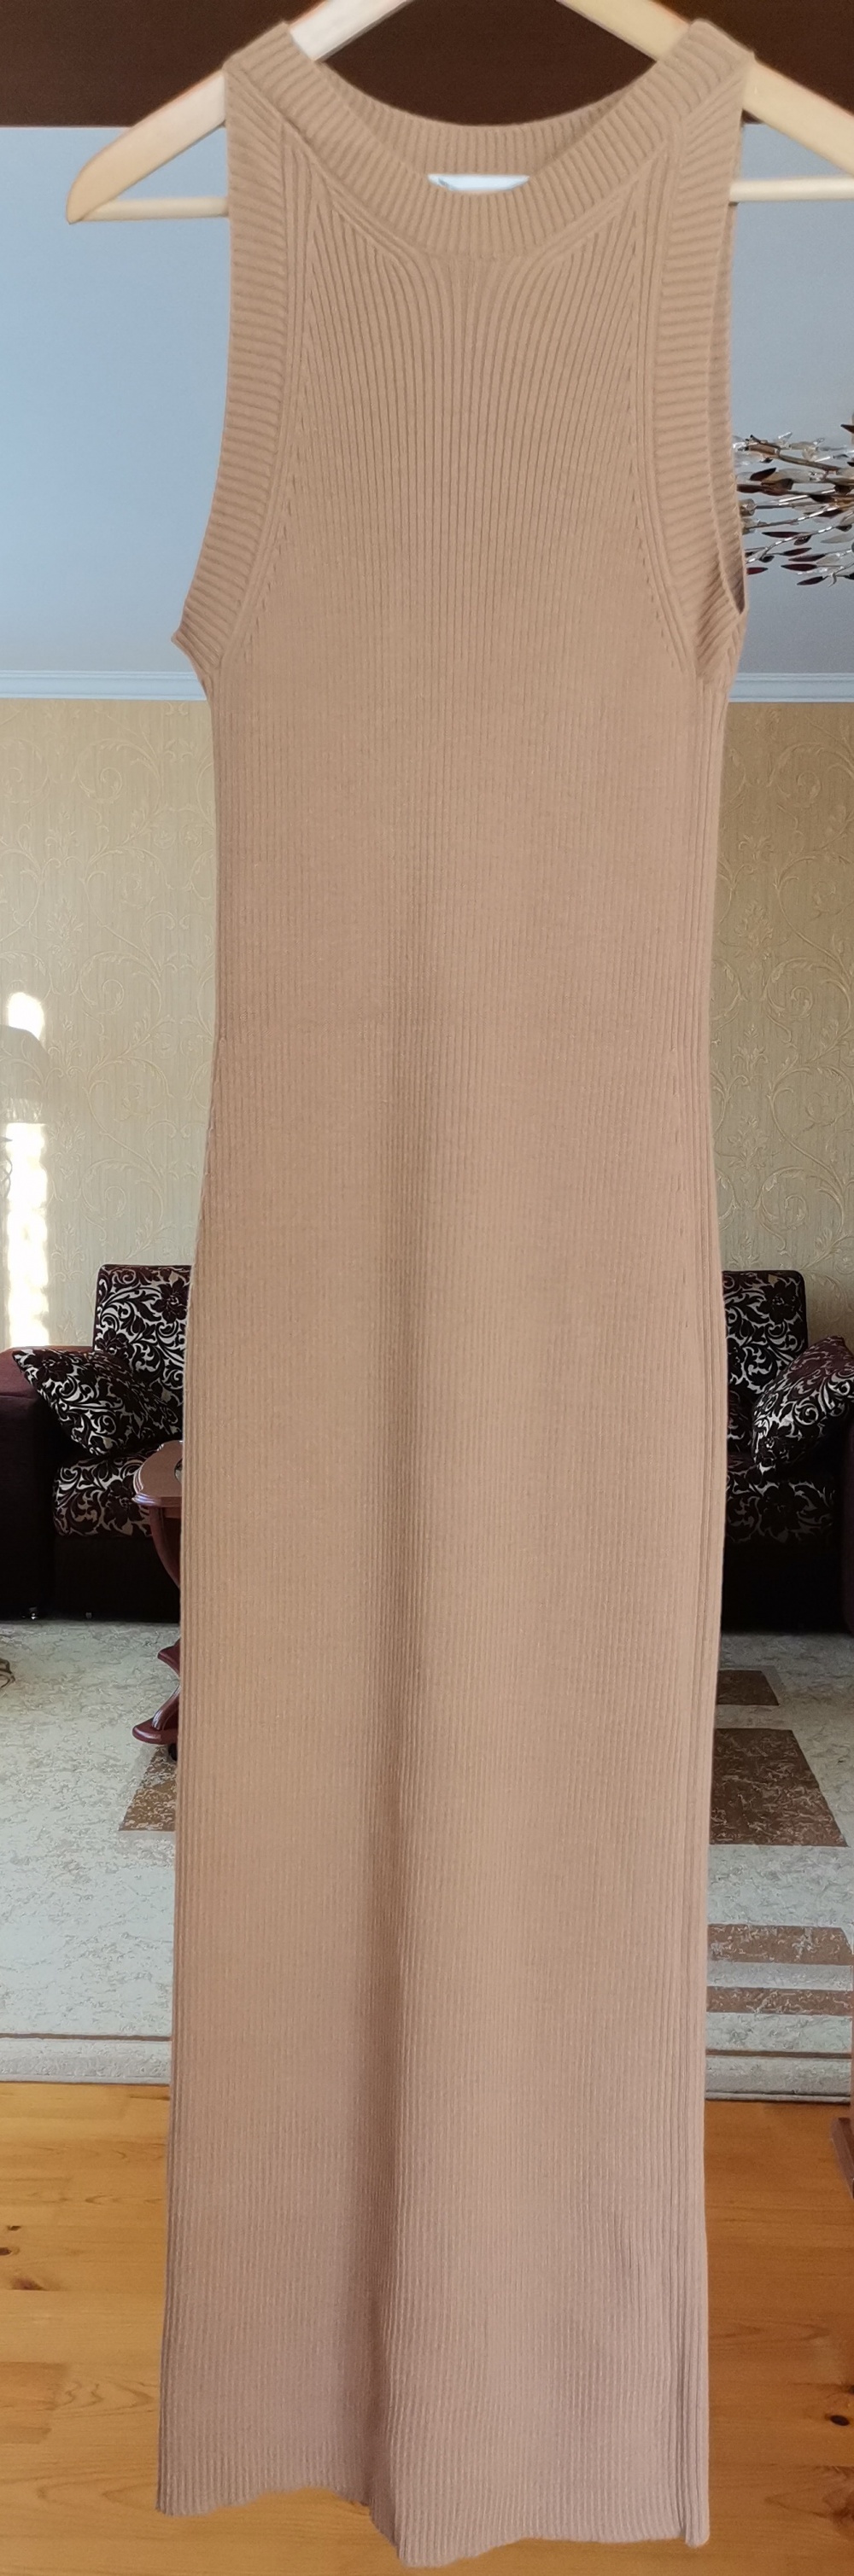 Платье Moru, размер 44-46, 46 росс.